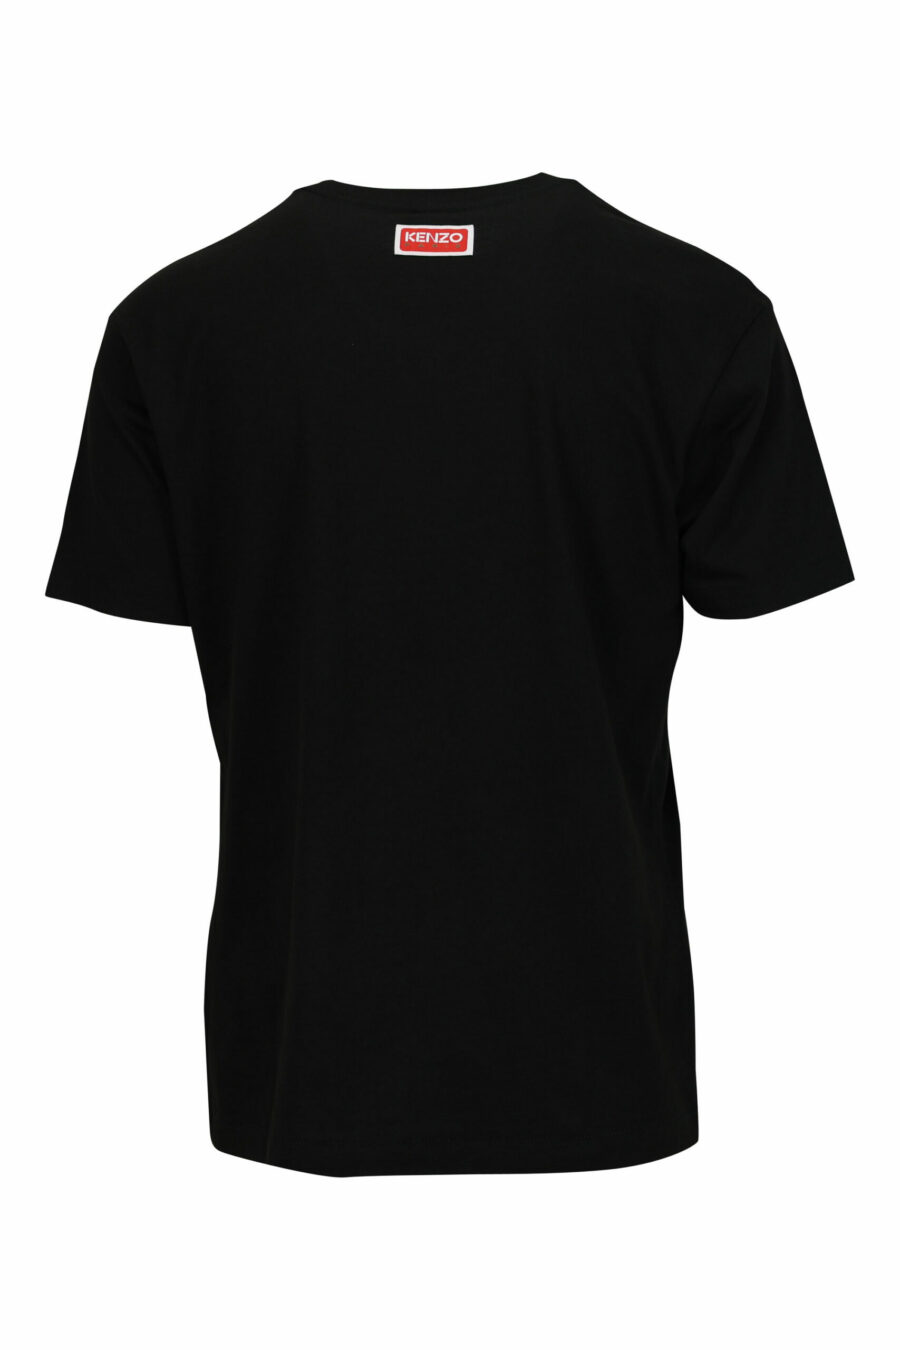 T-shirt noir surdimensionné avec logo en relief d'un grand éléphant - 3612230568839 1 scaled